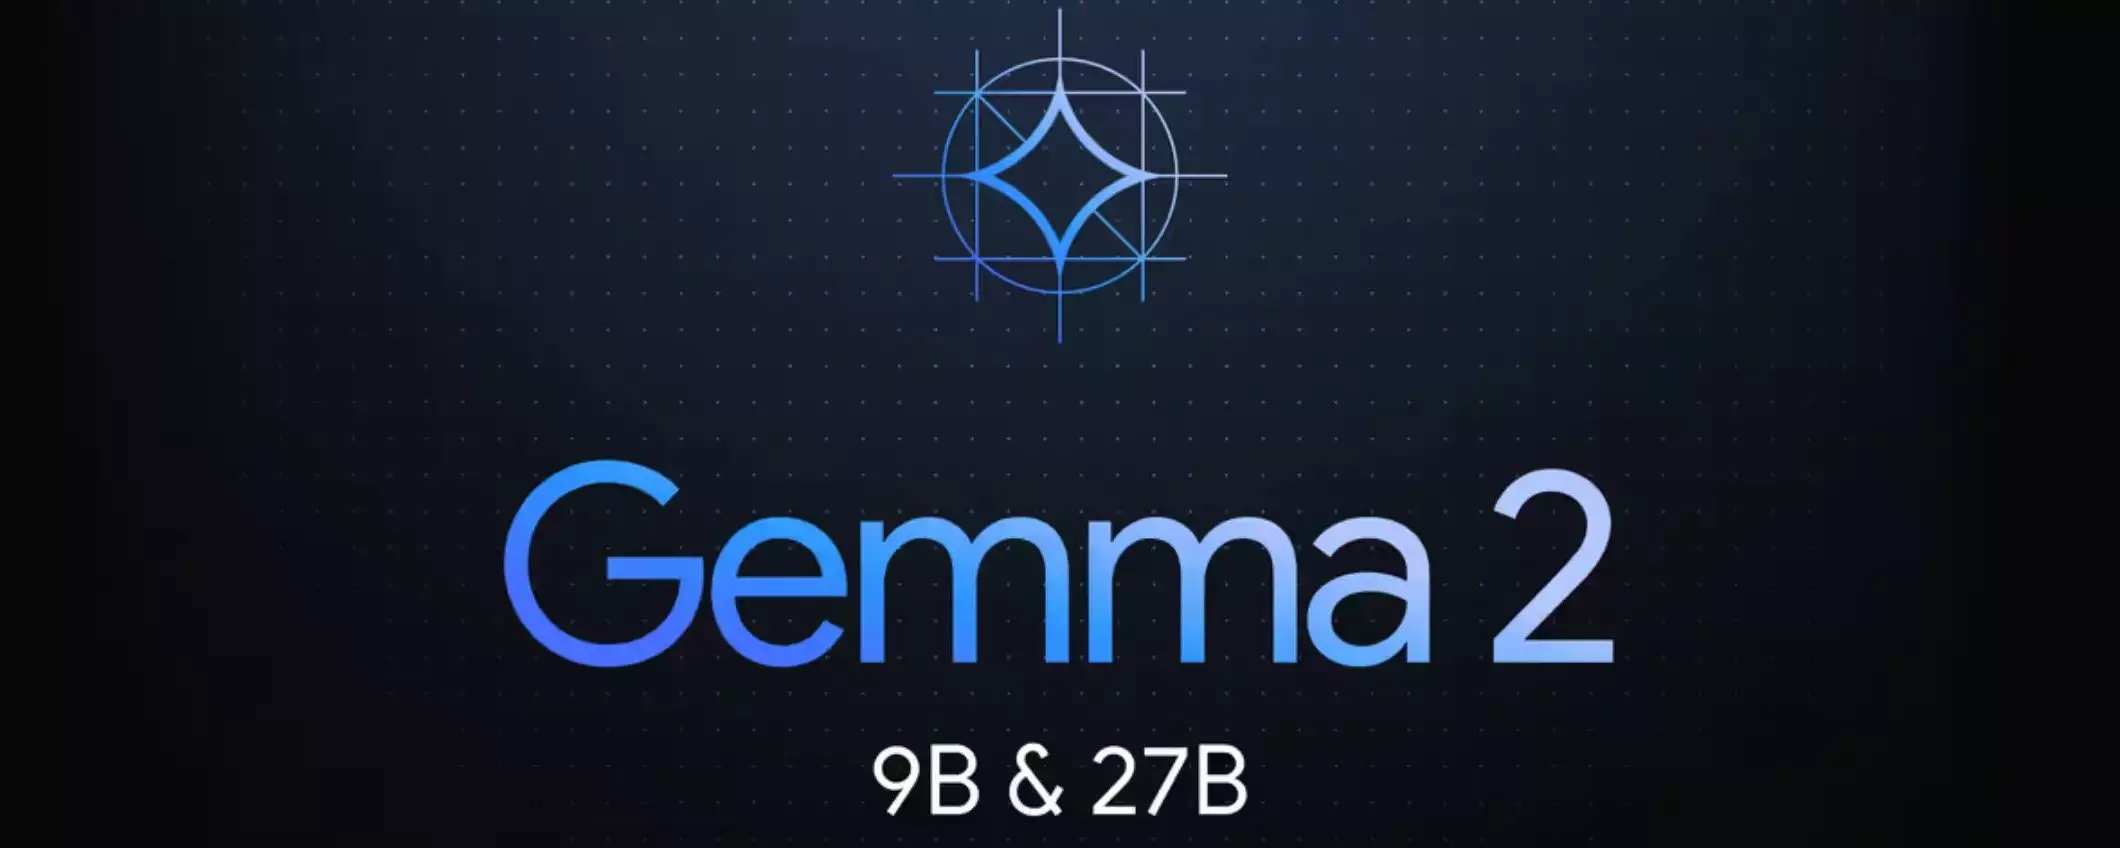 Google rilascia Gemma 2 da 9 e 27 miliardi di parametri